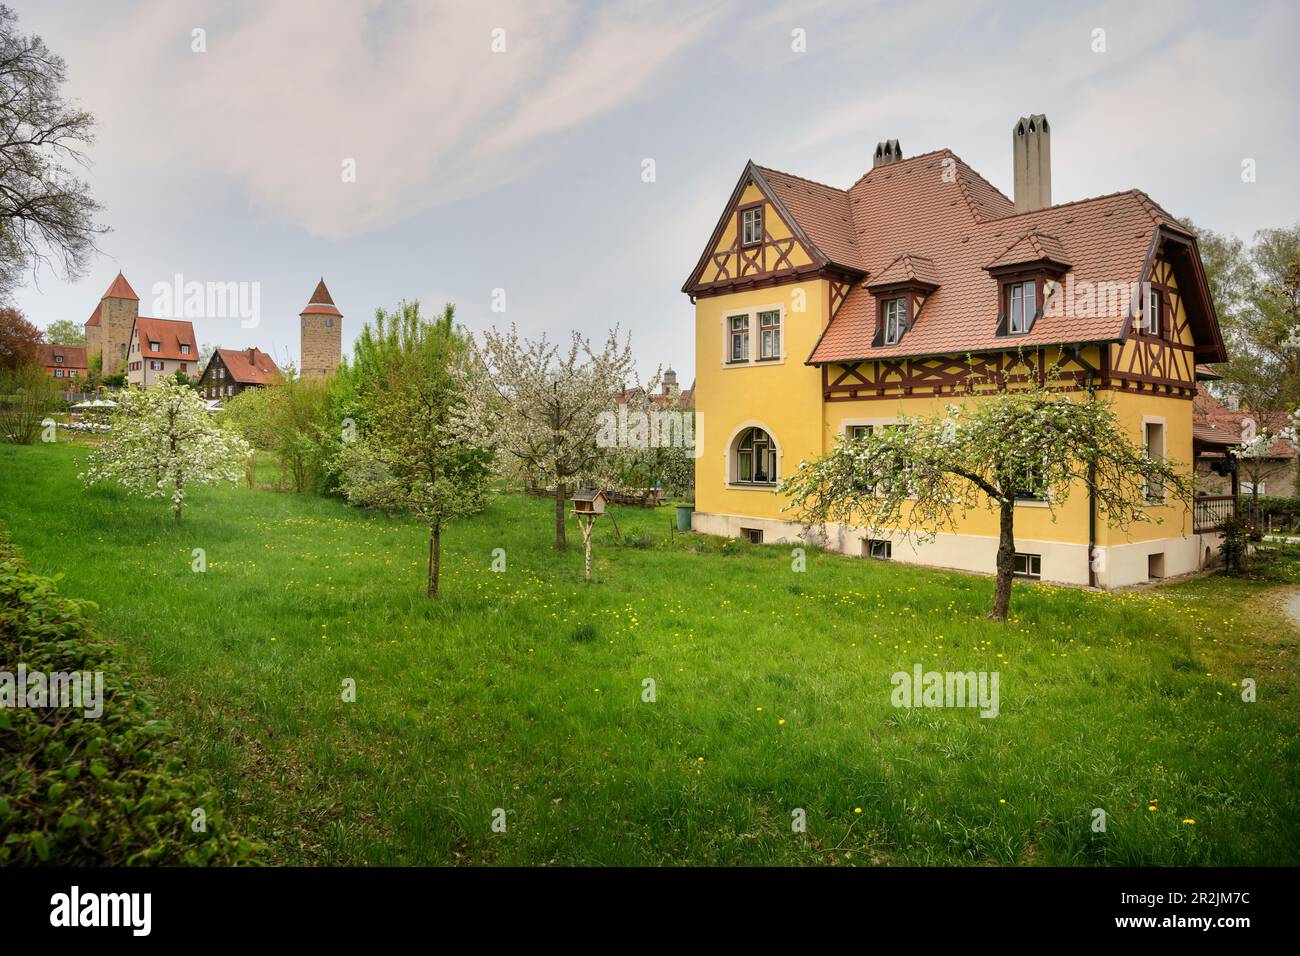 Casa gialla a graticcio e alberi da frutto fioriti, storico centro storico di Dinkelsbühl sul Wörnitz (fiume), strada romantica, quartiere Ansbach, Medio Foto Stock